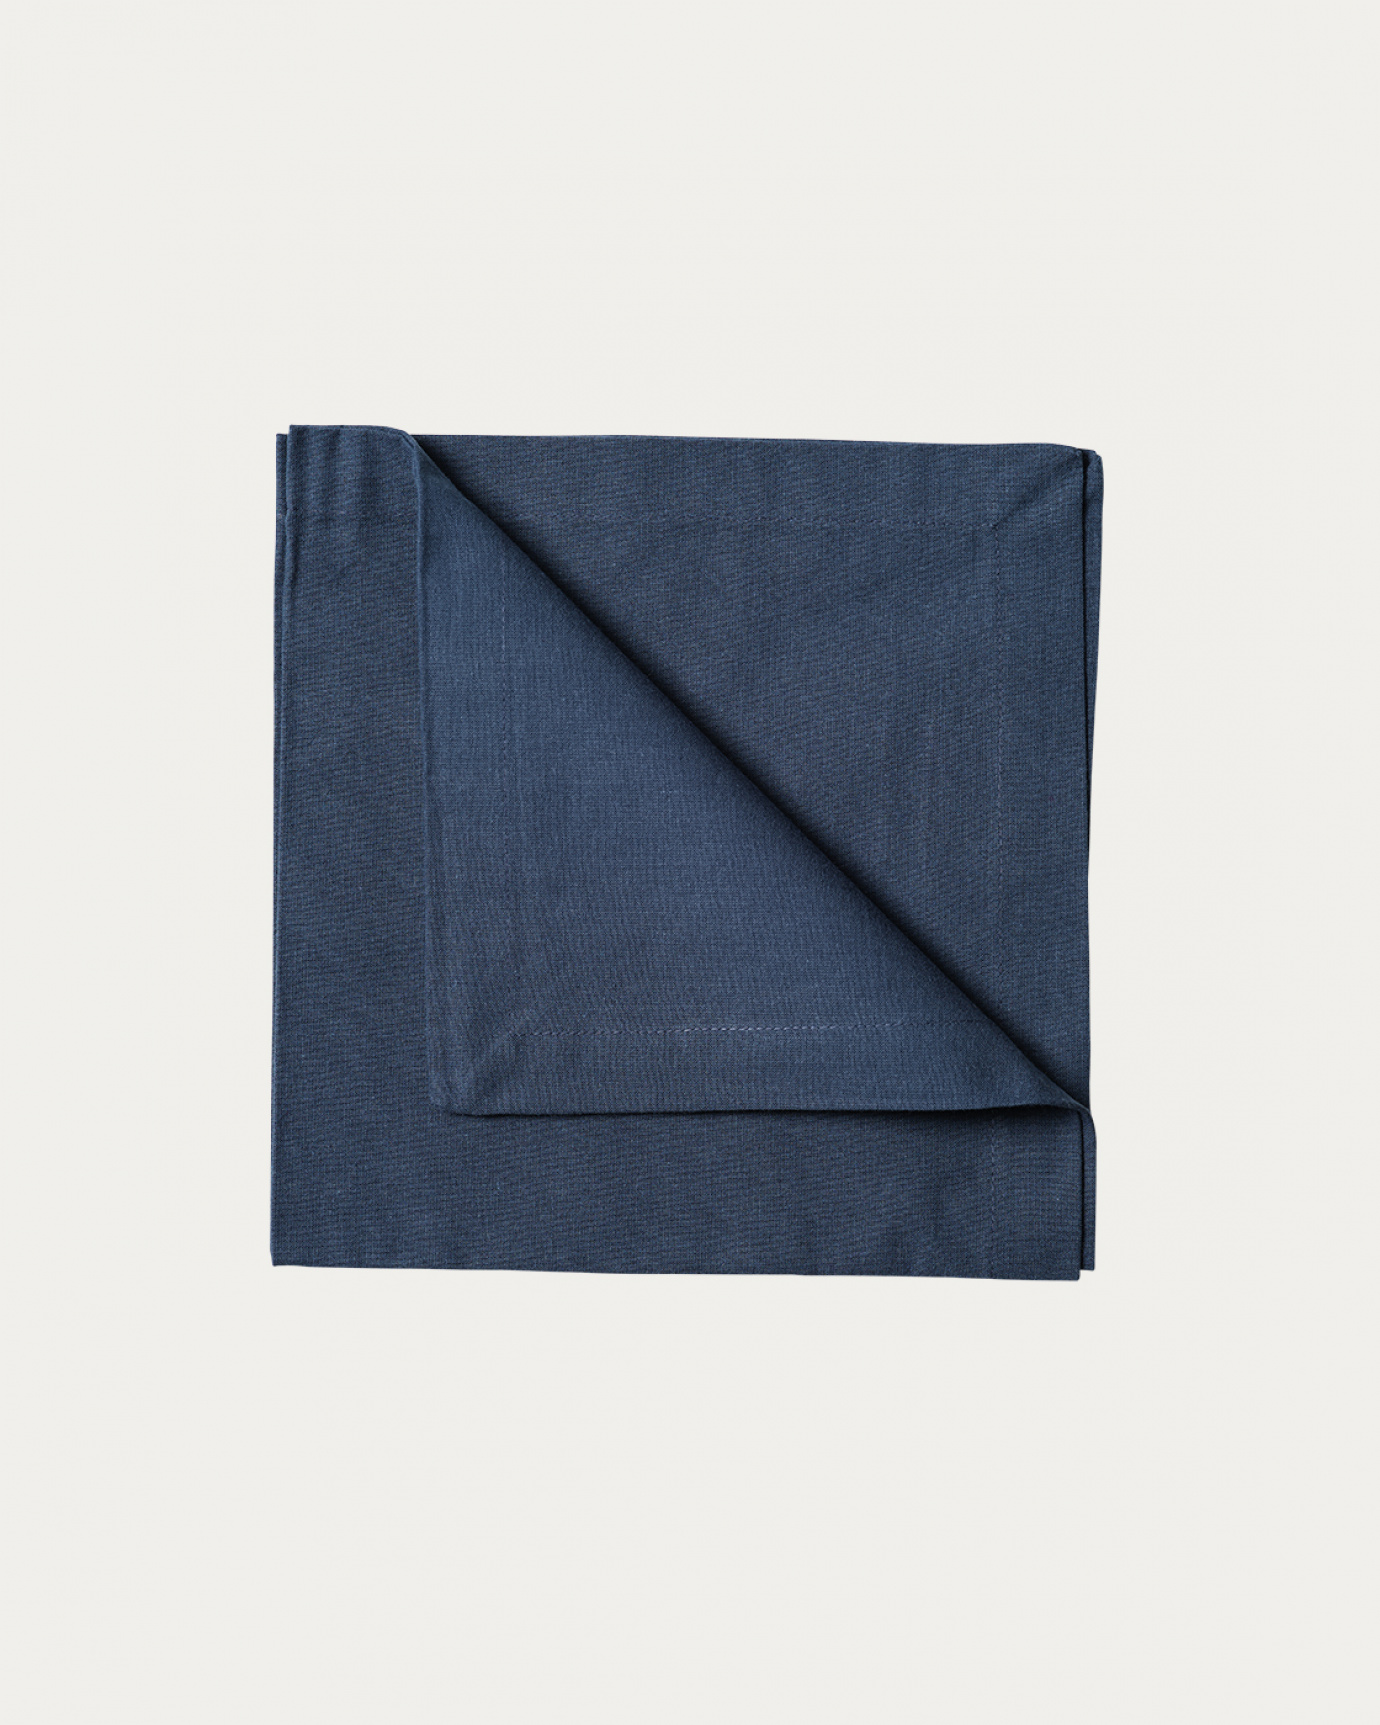 Produktbild indigoblau ROBERT Serviette aus weicher Baumwolle von LINUM DESIGN. Größe 45x45 cm und in 4er-Pack verkauft.